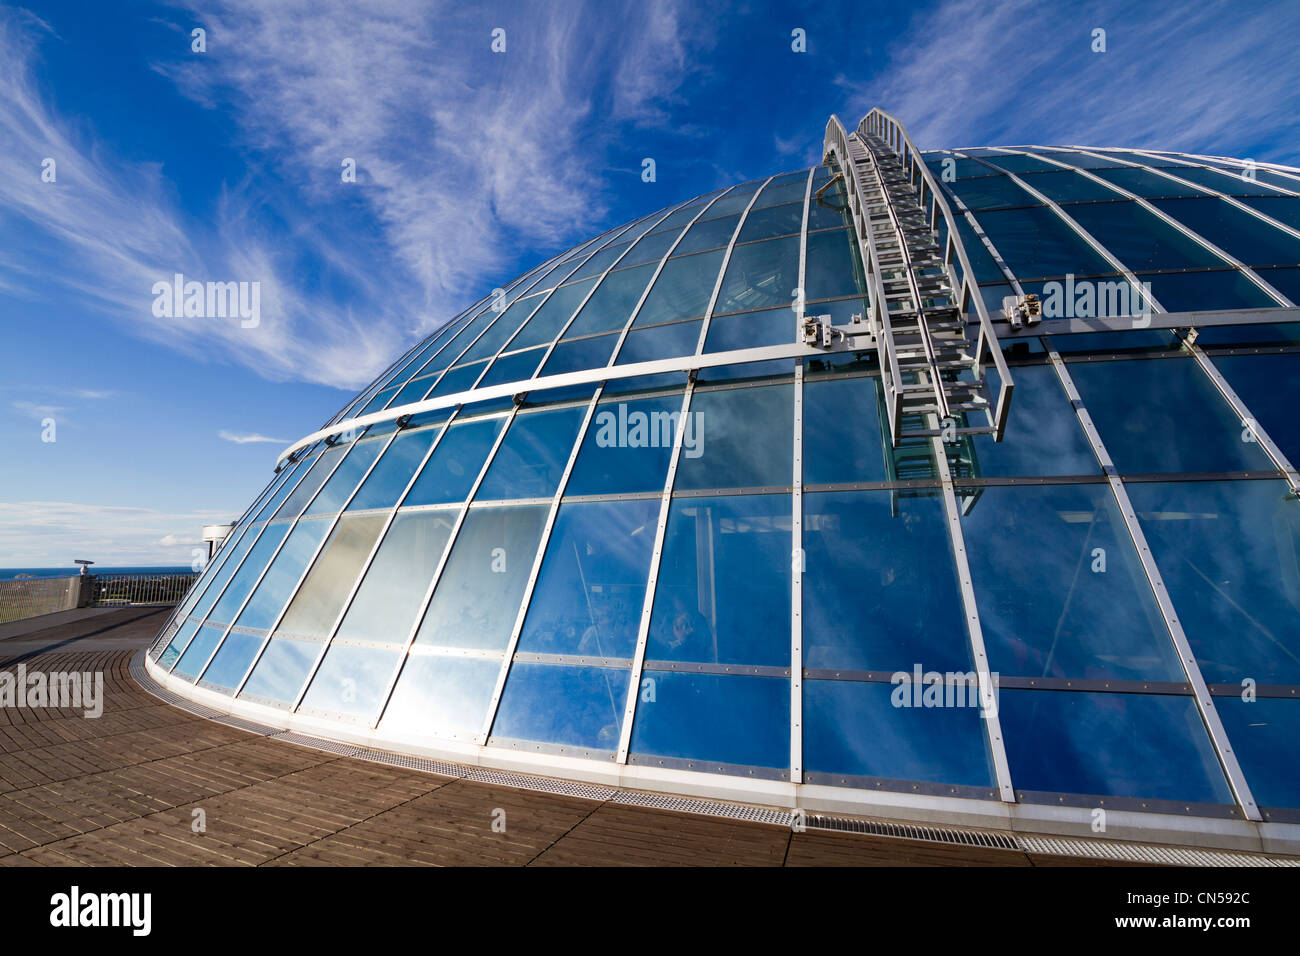 Islandia, Reykjavik, la cúpula de vidrio de Perlan Foto de stock